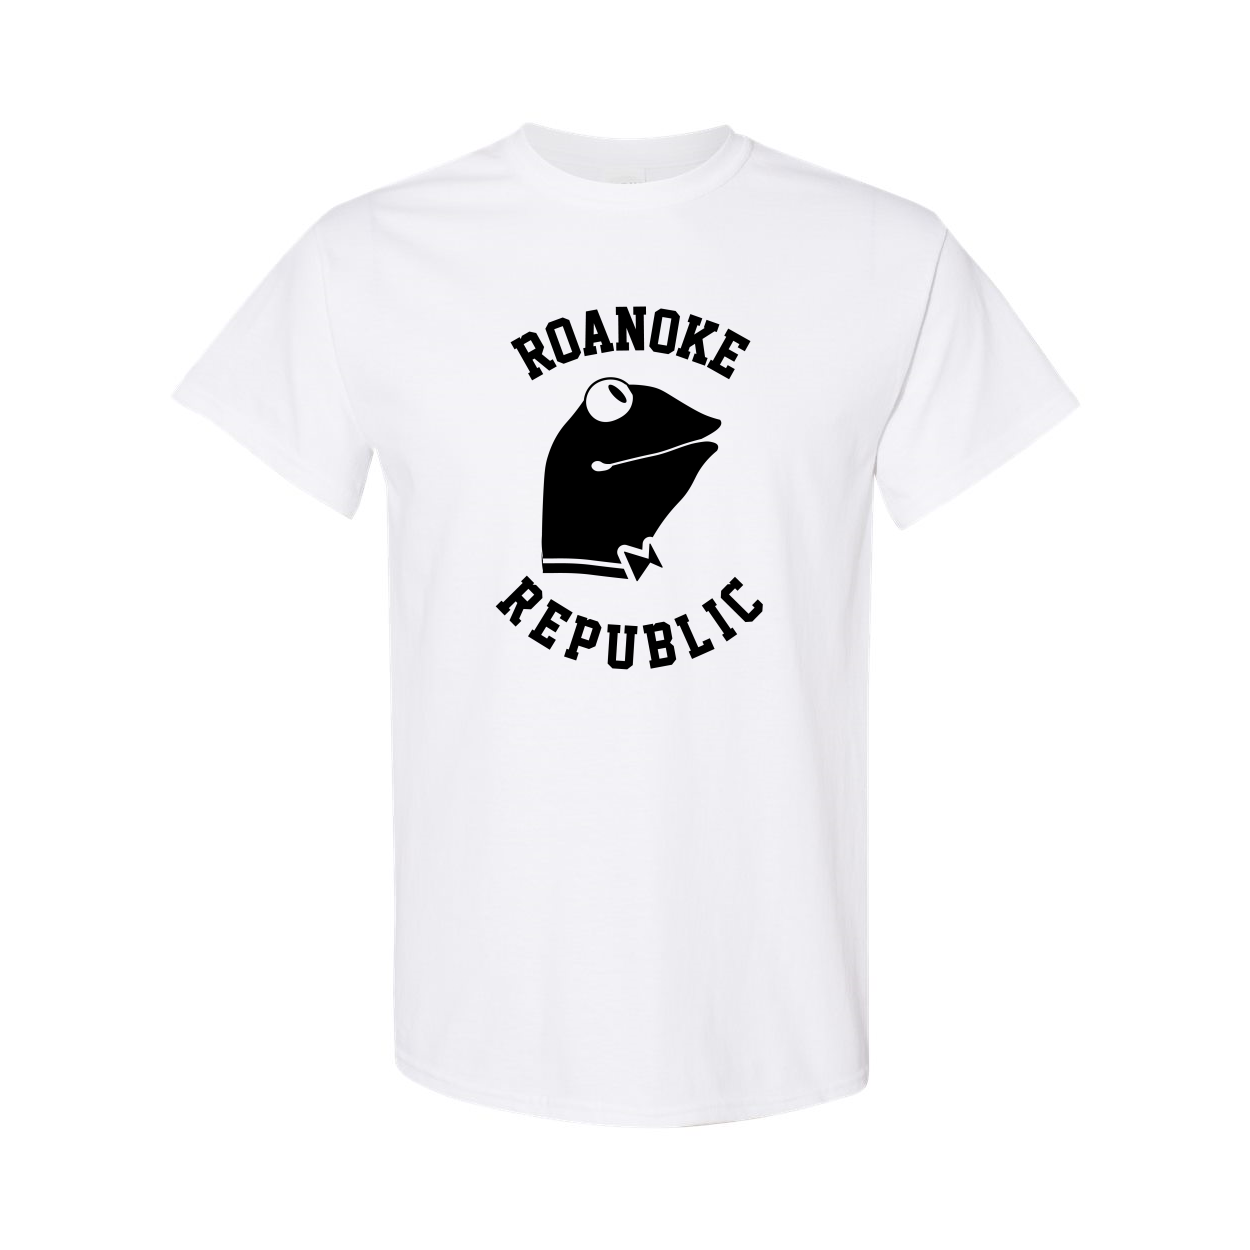 Roanoke Republic Brand Tee - The Columbian Exchange Group